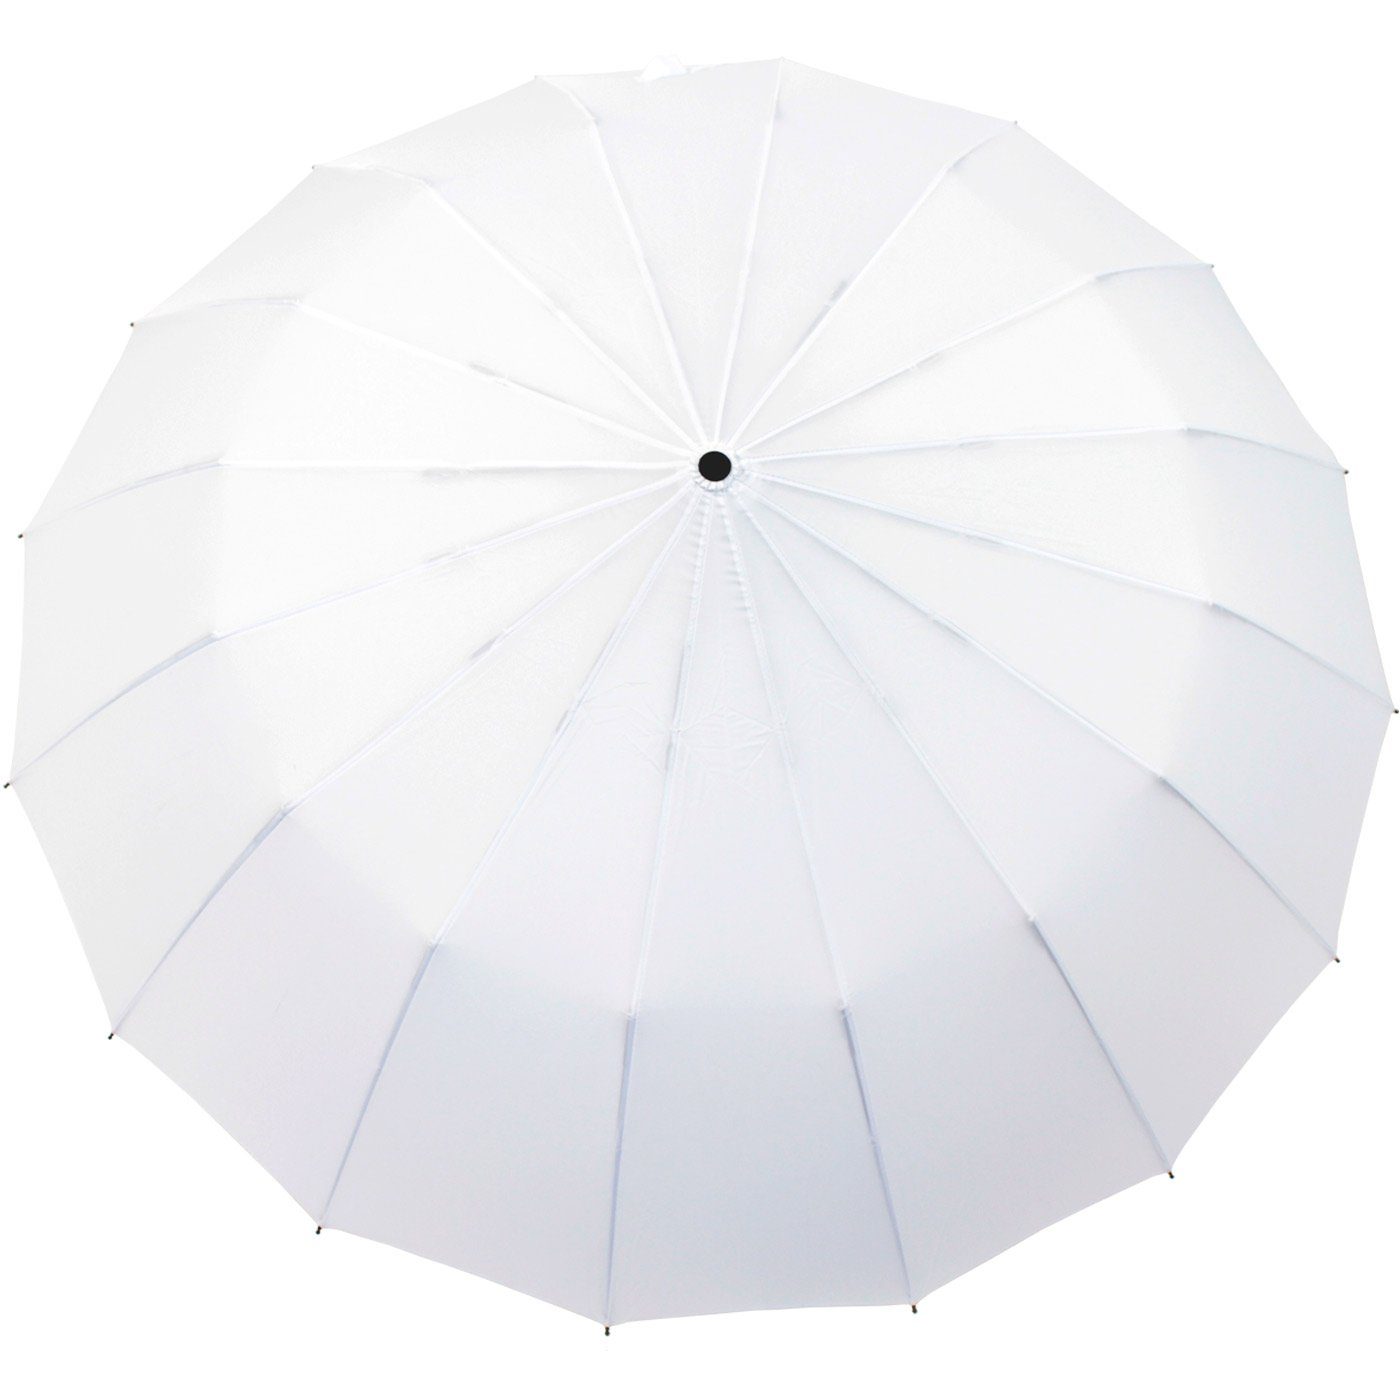 stabil Taschenregenschirm iX-brella 16 auffällig und farbenfroh, extra und weiß mit Mini Streben extravagant